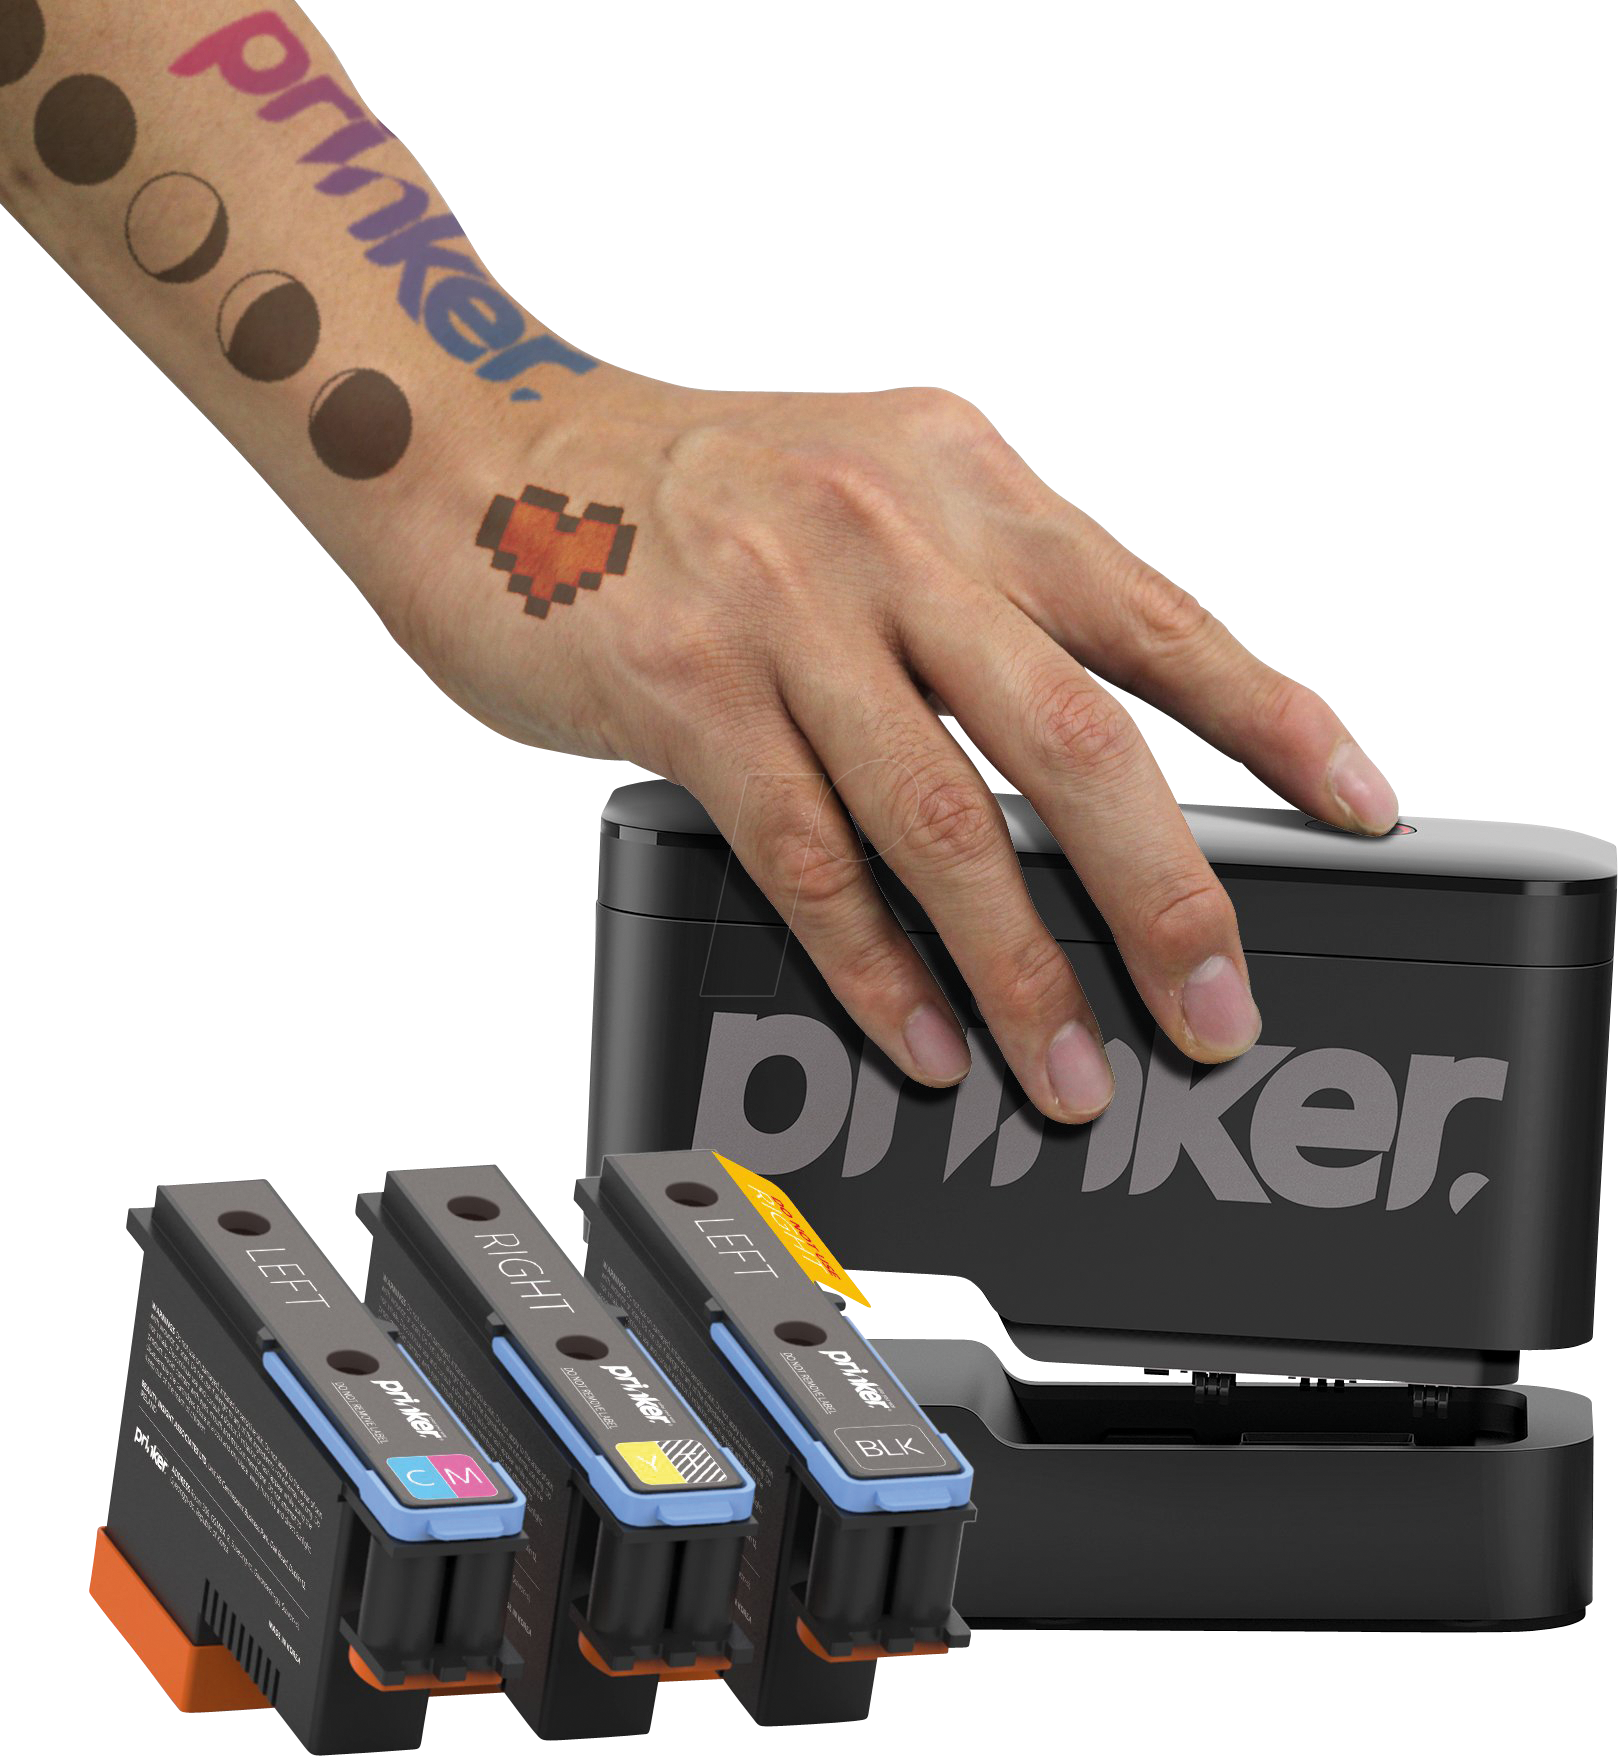 PRINKER S COLOR - Tattoo Drucker, Prinker S, 22 x 1000mm, color